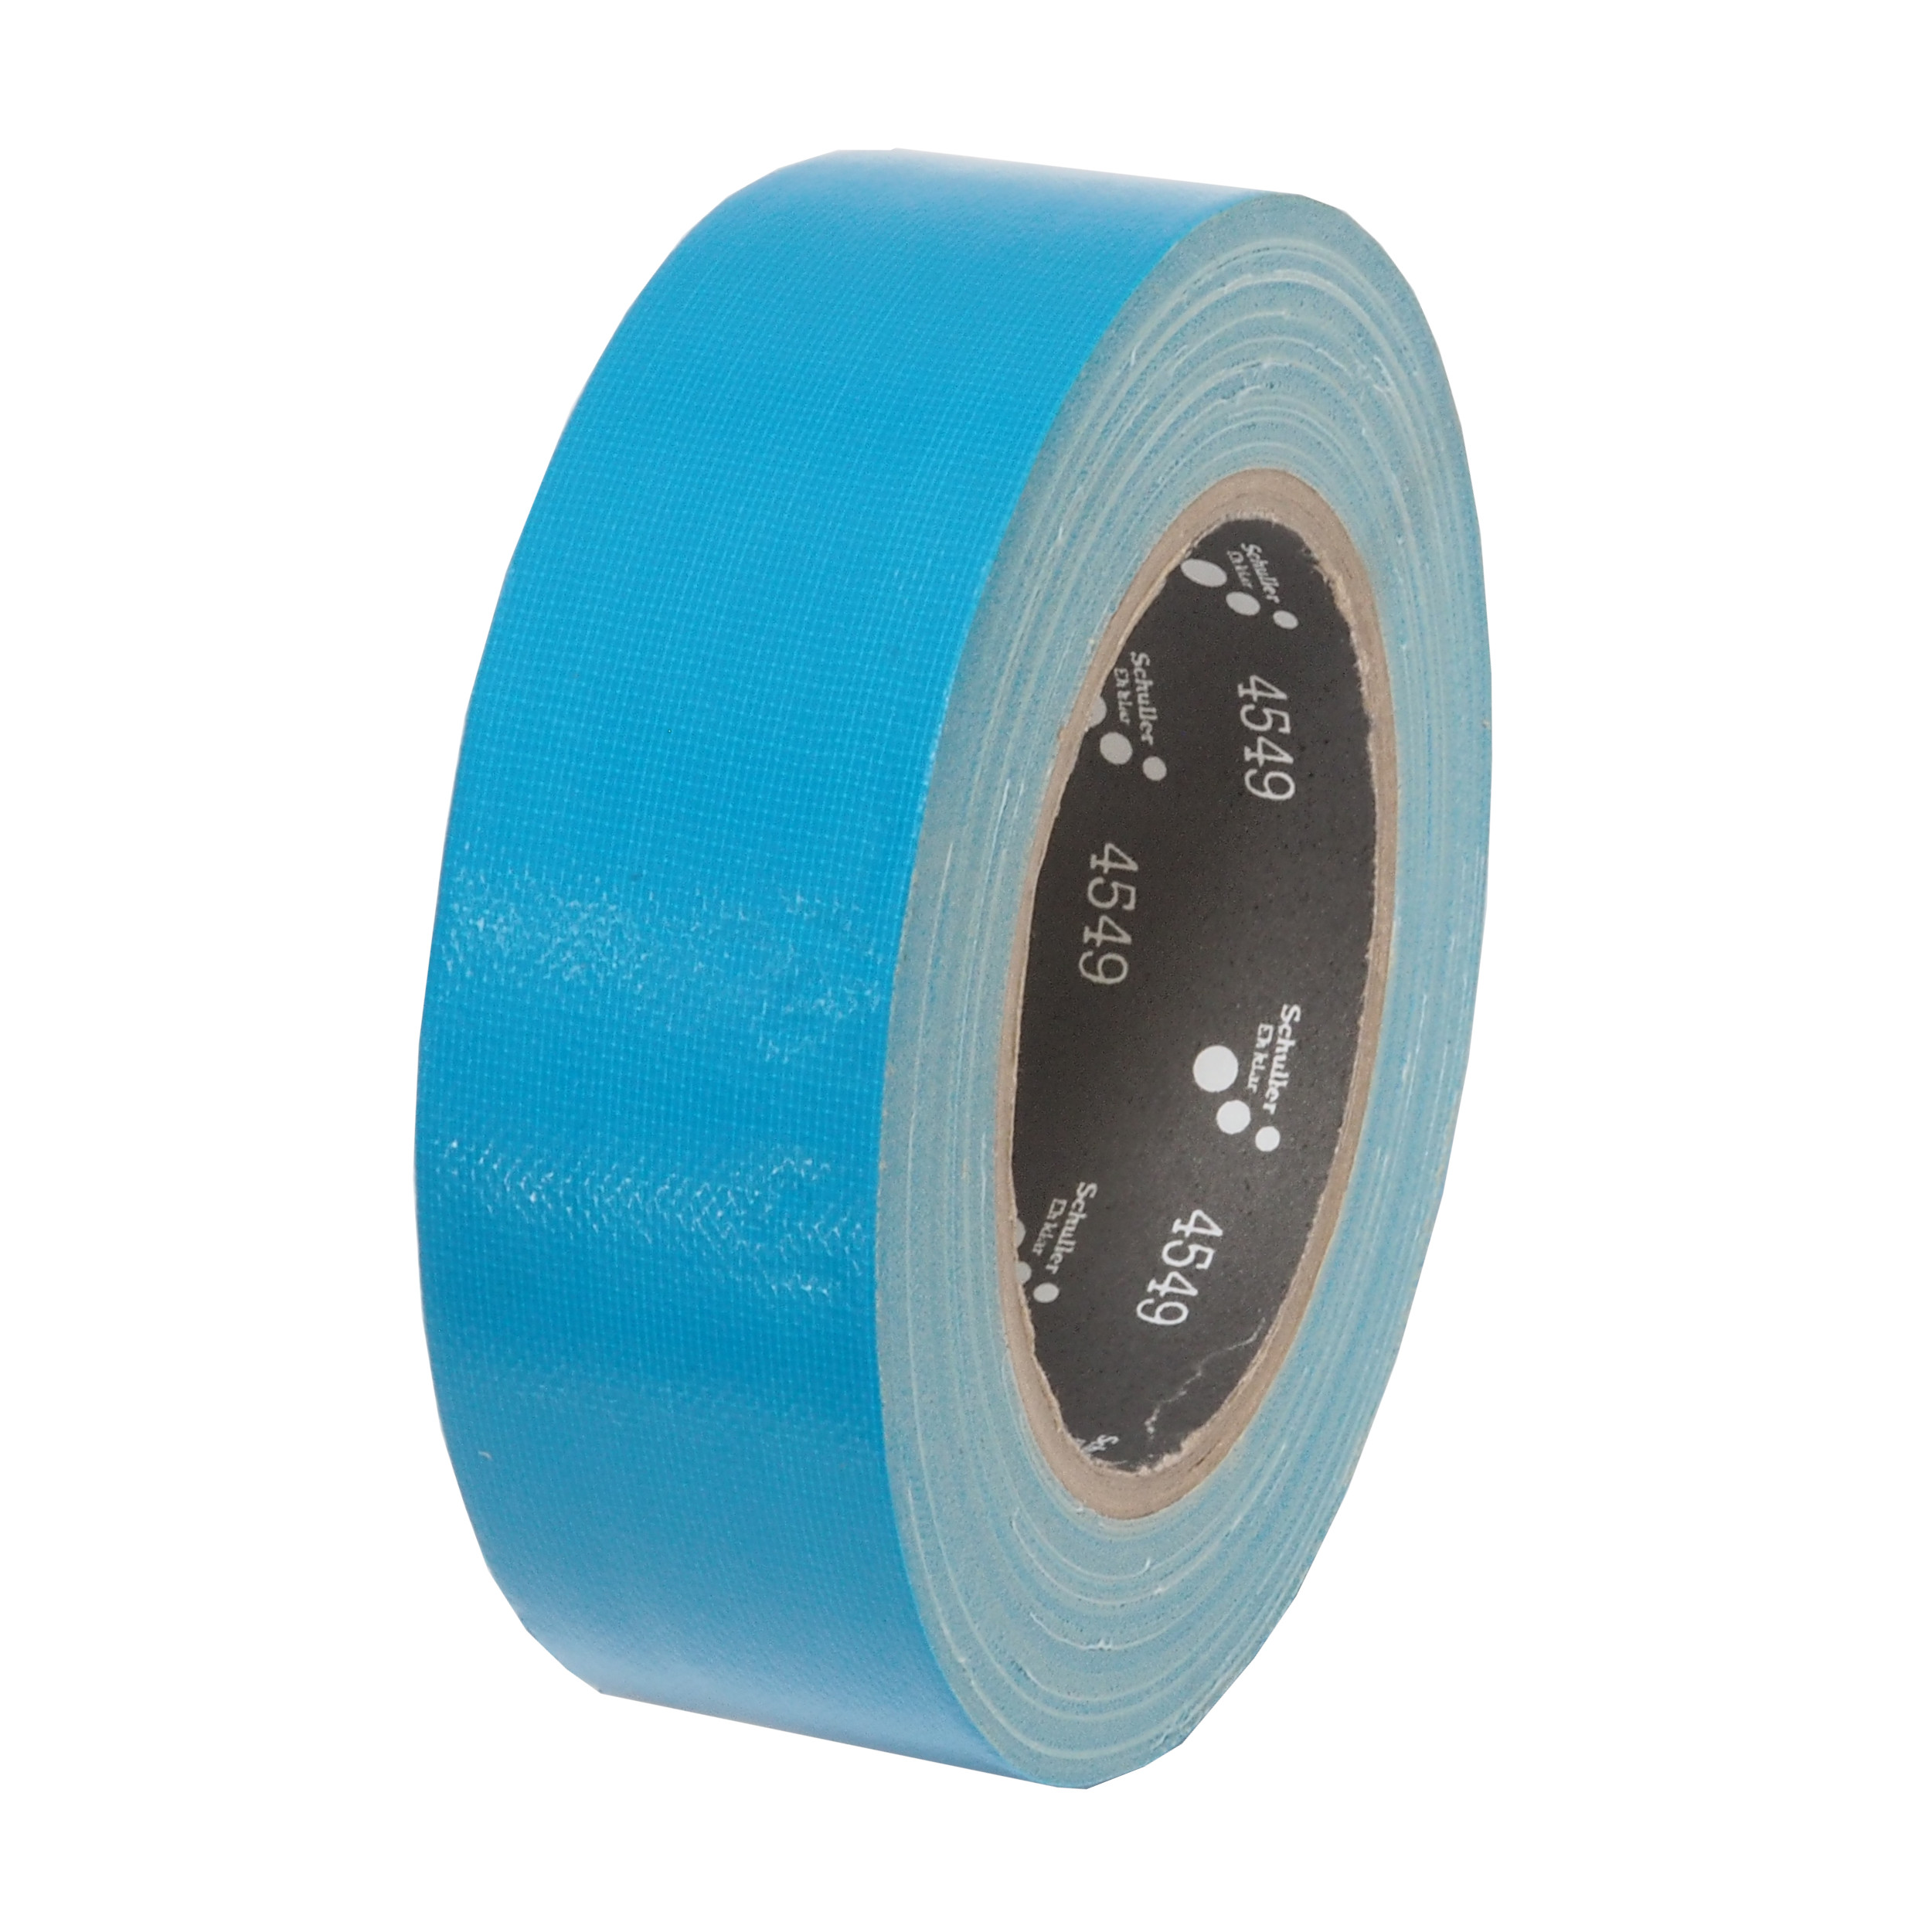 páska lepící, tkaninová, UV odolná, modrá, 30 mm x 25 m 0.26 Kg TOP Sklad4 701408 45